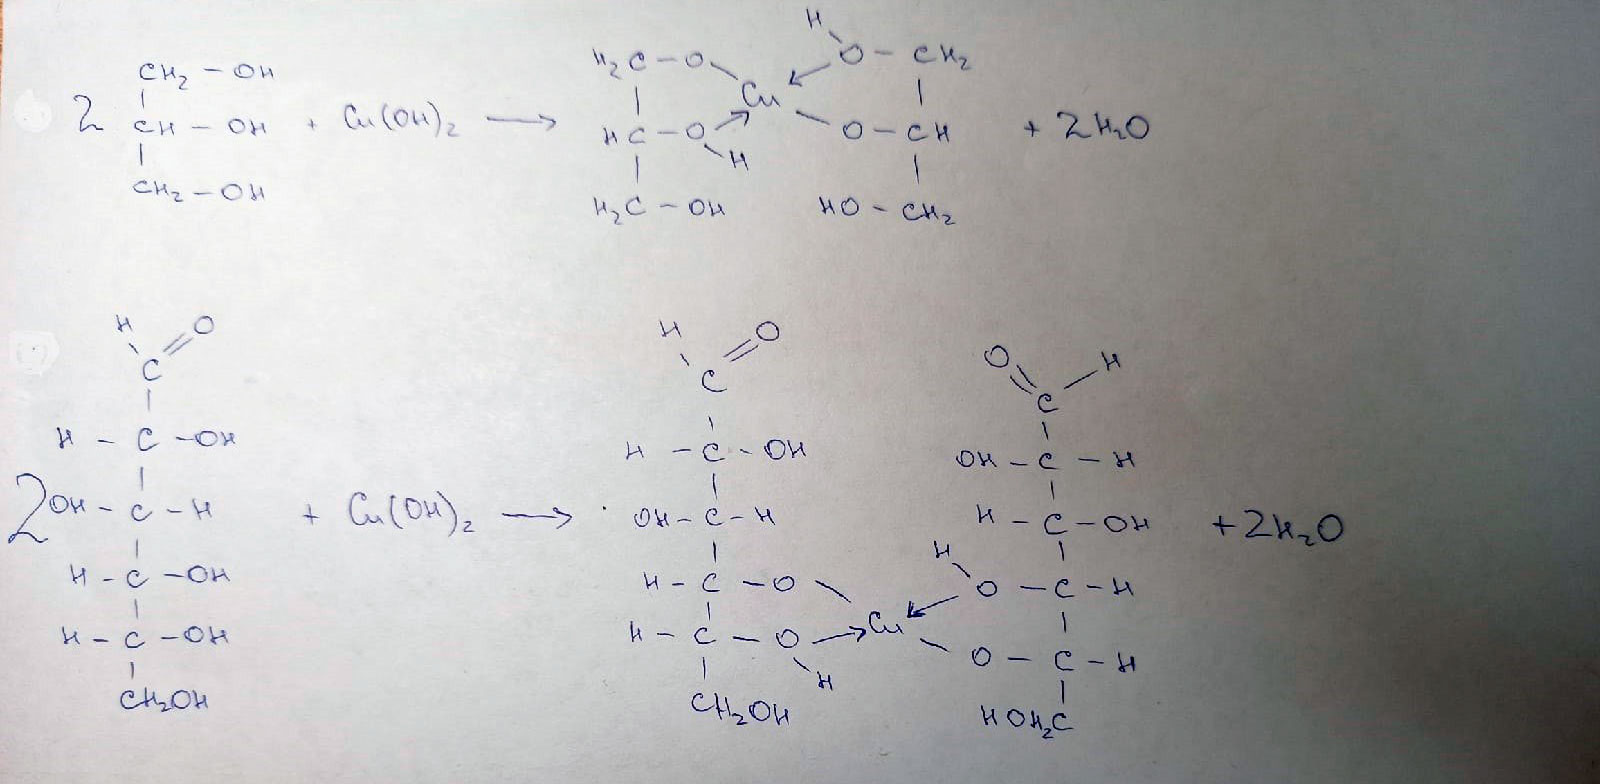 Из гидроксида меди 2 получить оксид меди. Глицерин и оксид меди. Формальдегид и гидроксид меди 2. Глицерин и гидроксид меди 2. Глицерин и оксид меди 2.